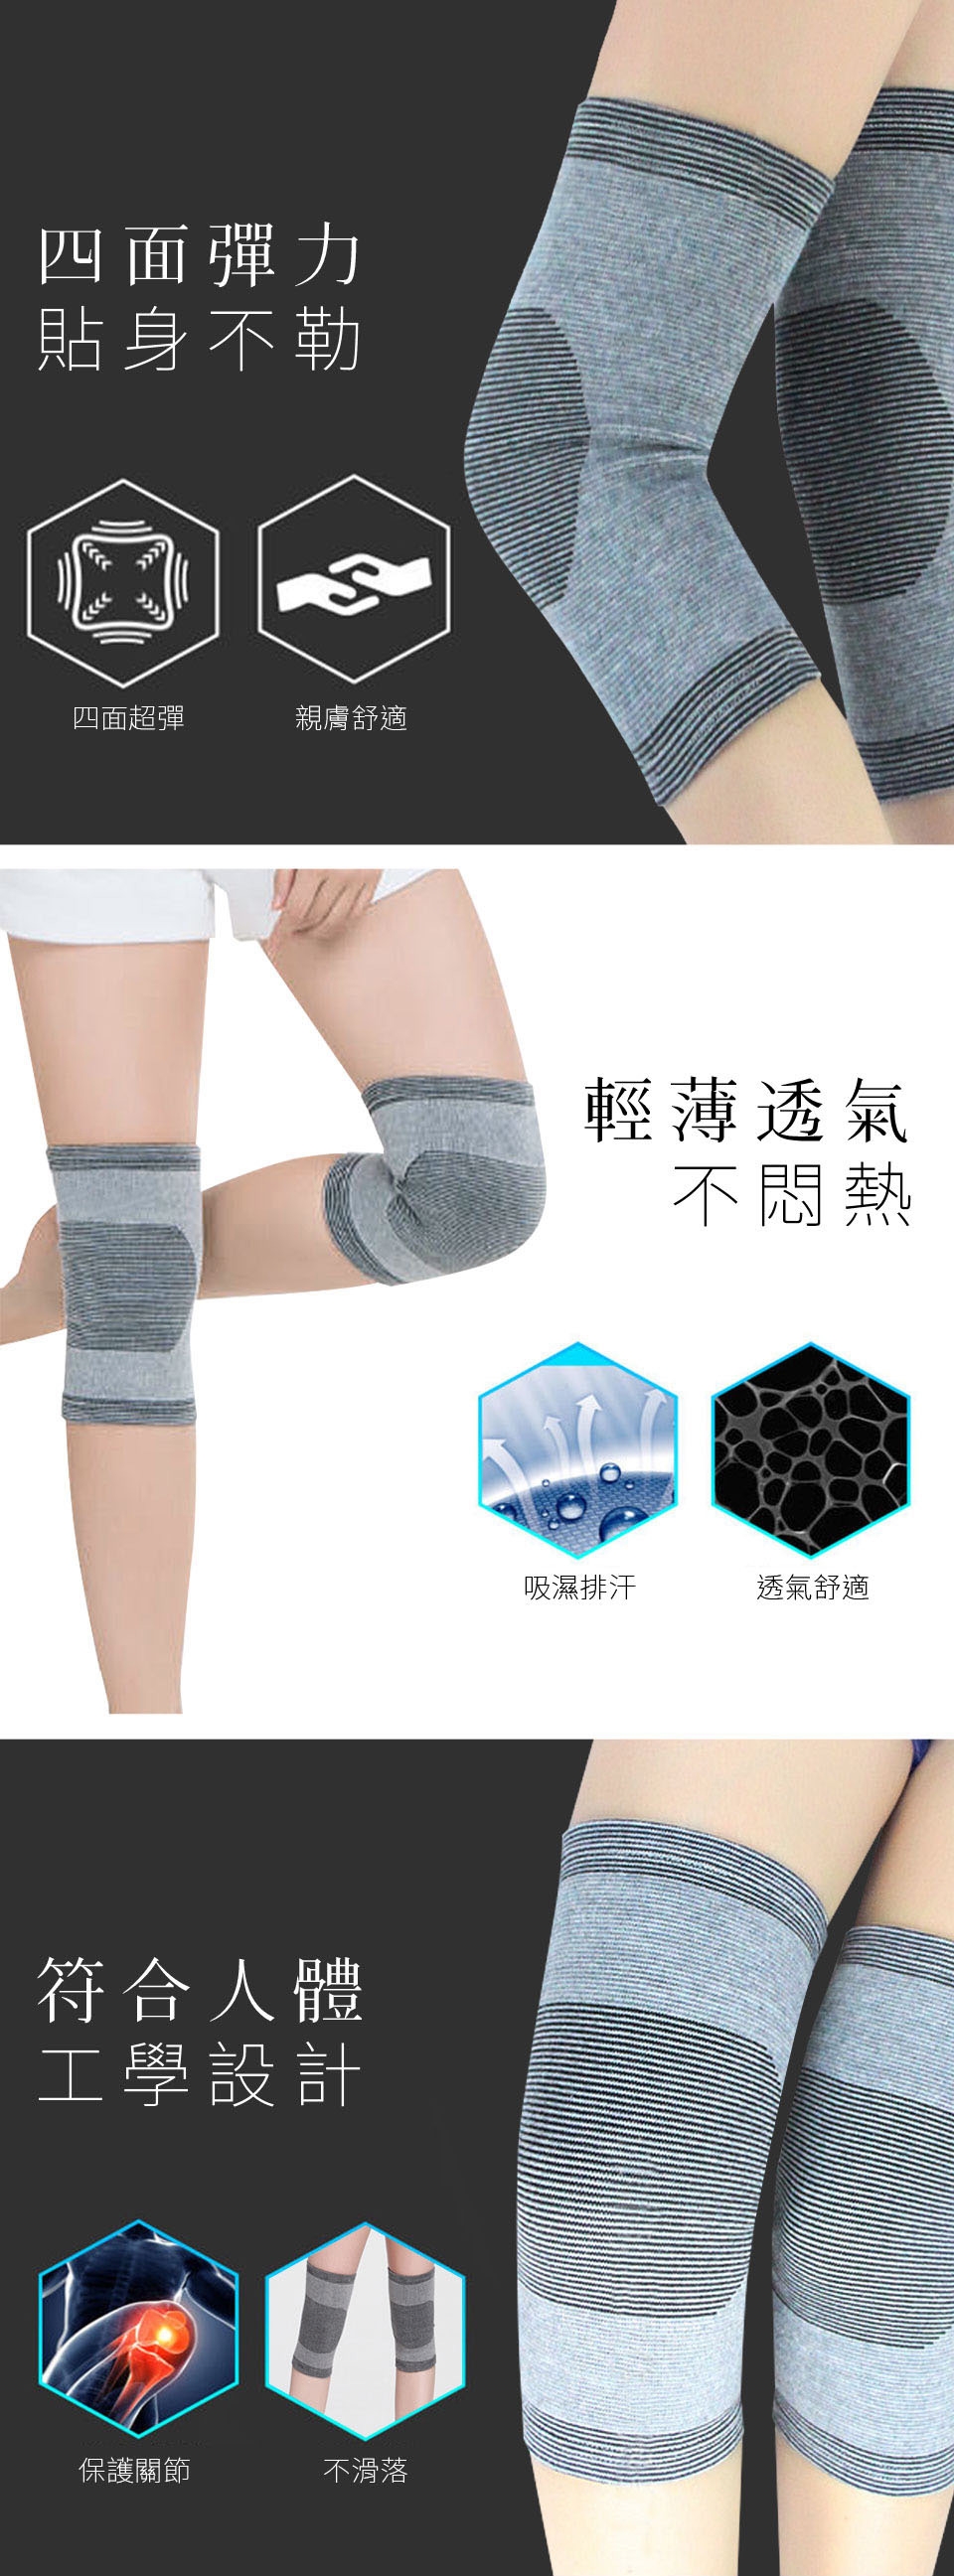 【Yi-sheng】全新升級六條軟鋼條-鍺元素高機能調整護腰帶(送CC膝腕)